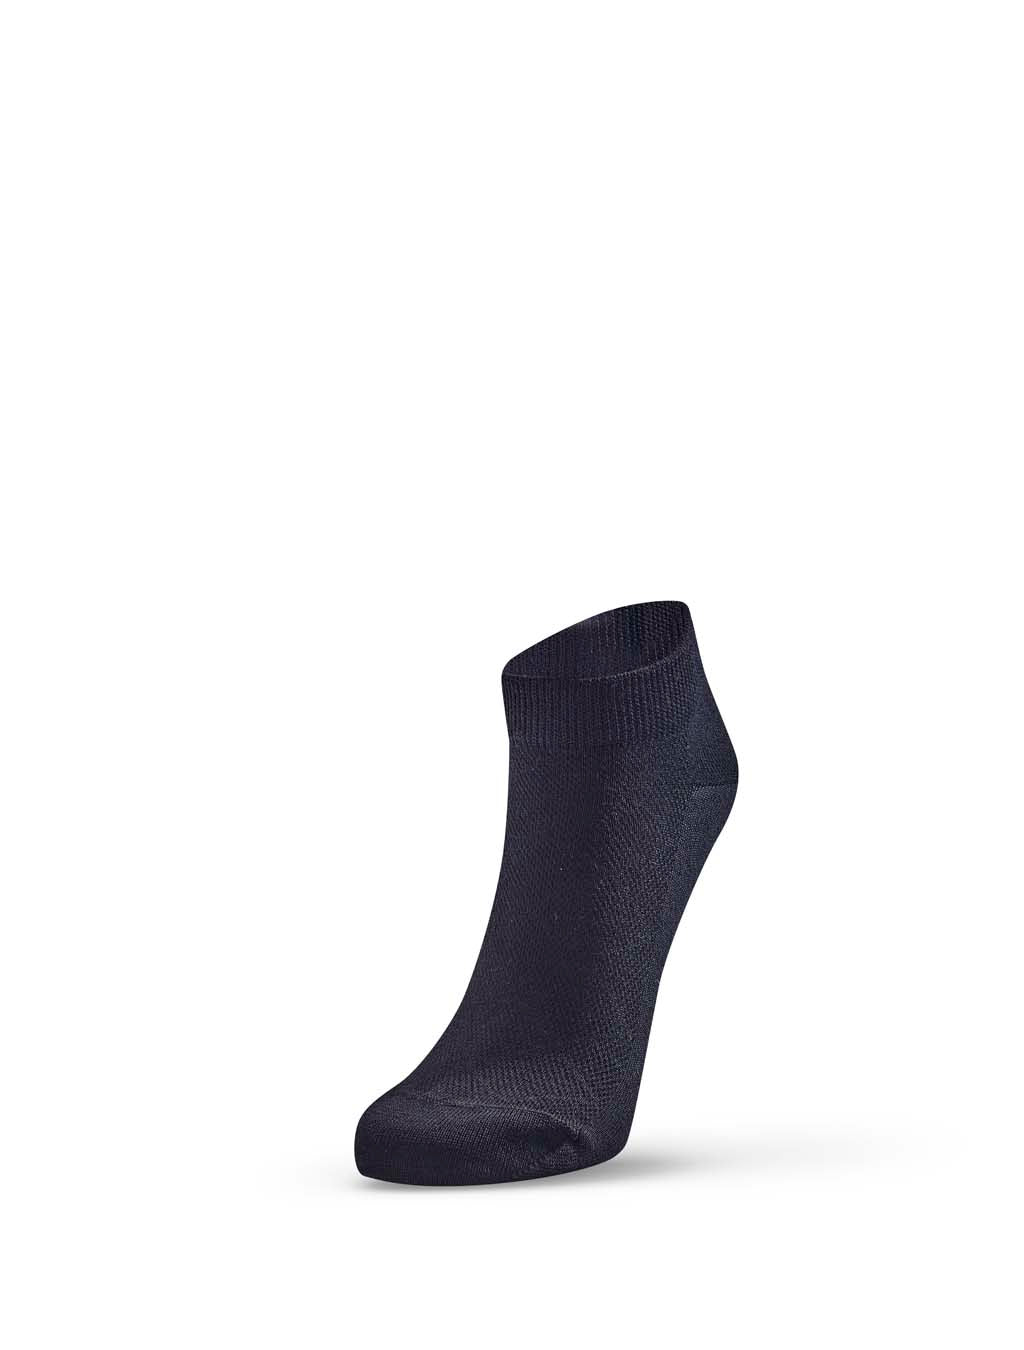 Merino Anklet Sock - Black